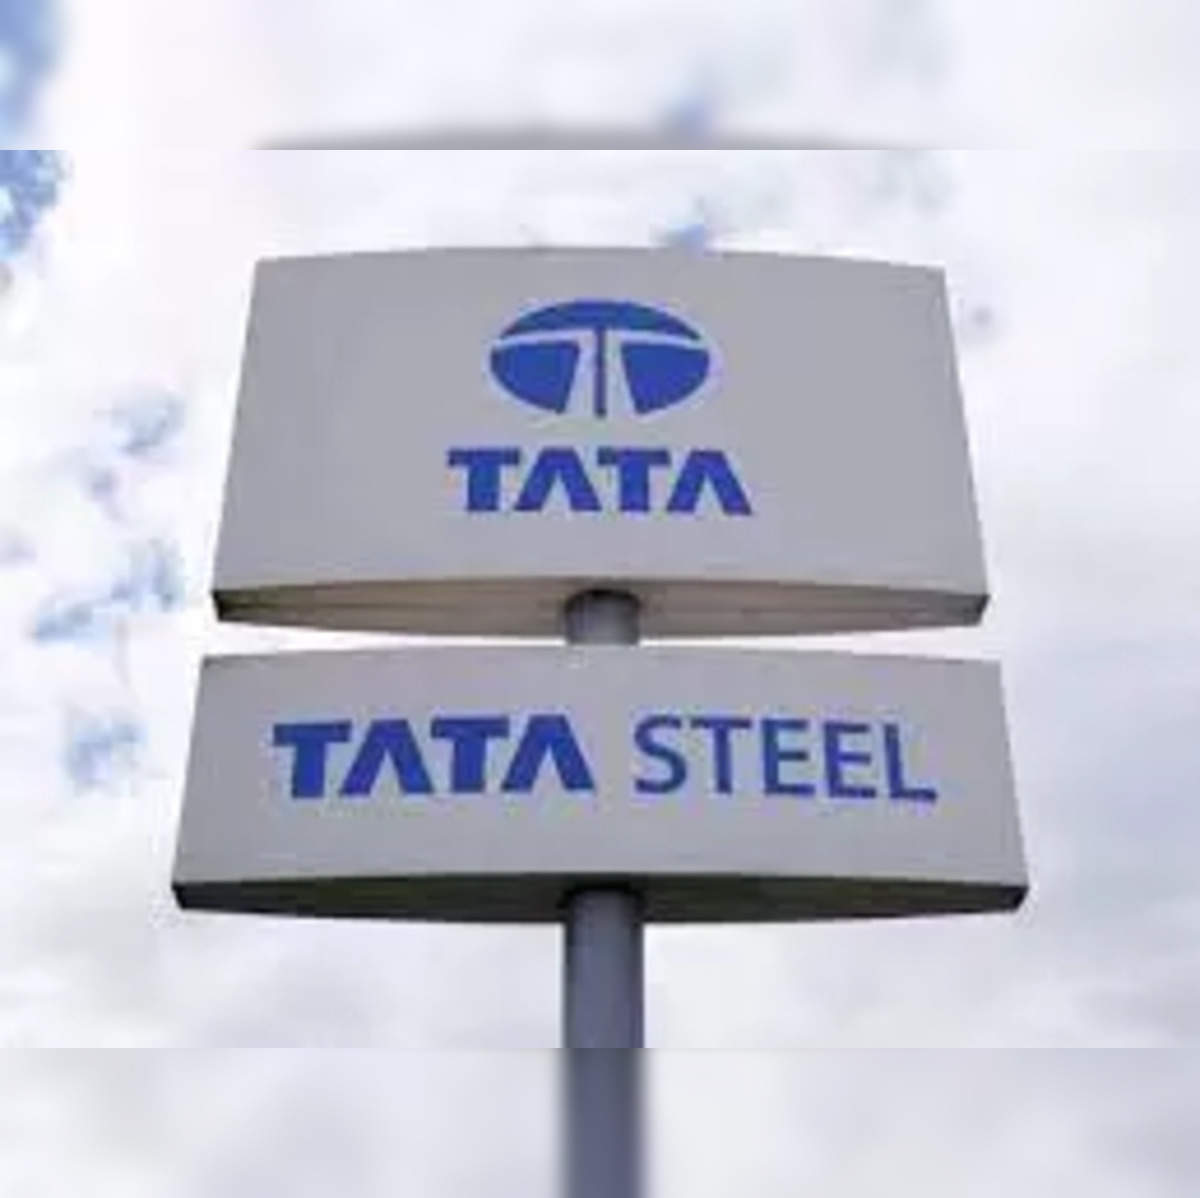 Notícias de Mineração Brasil - Indiana Tata Steel Testa Gás